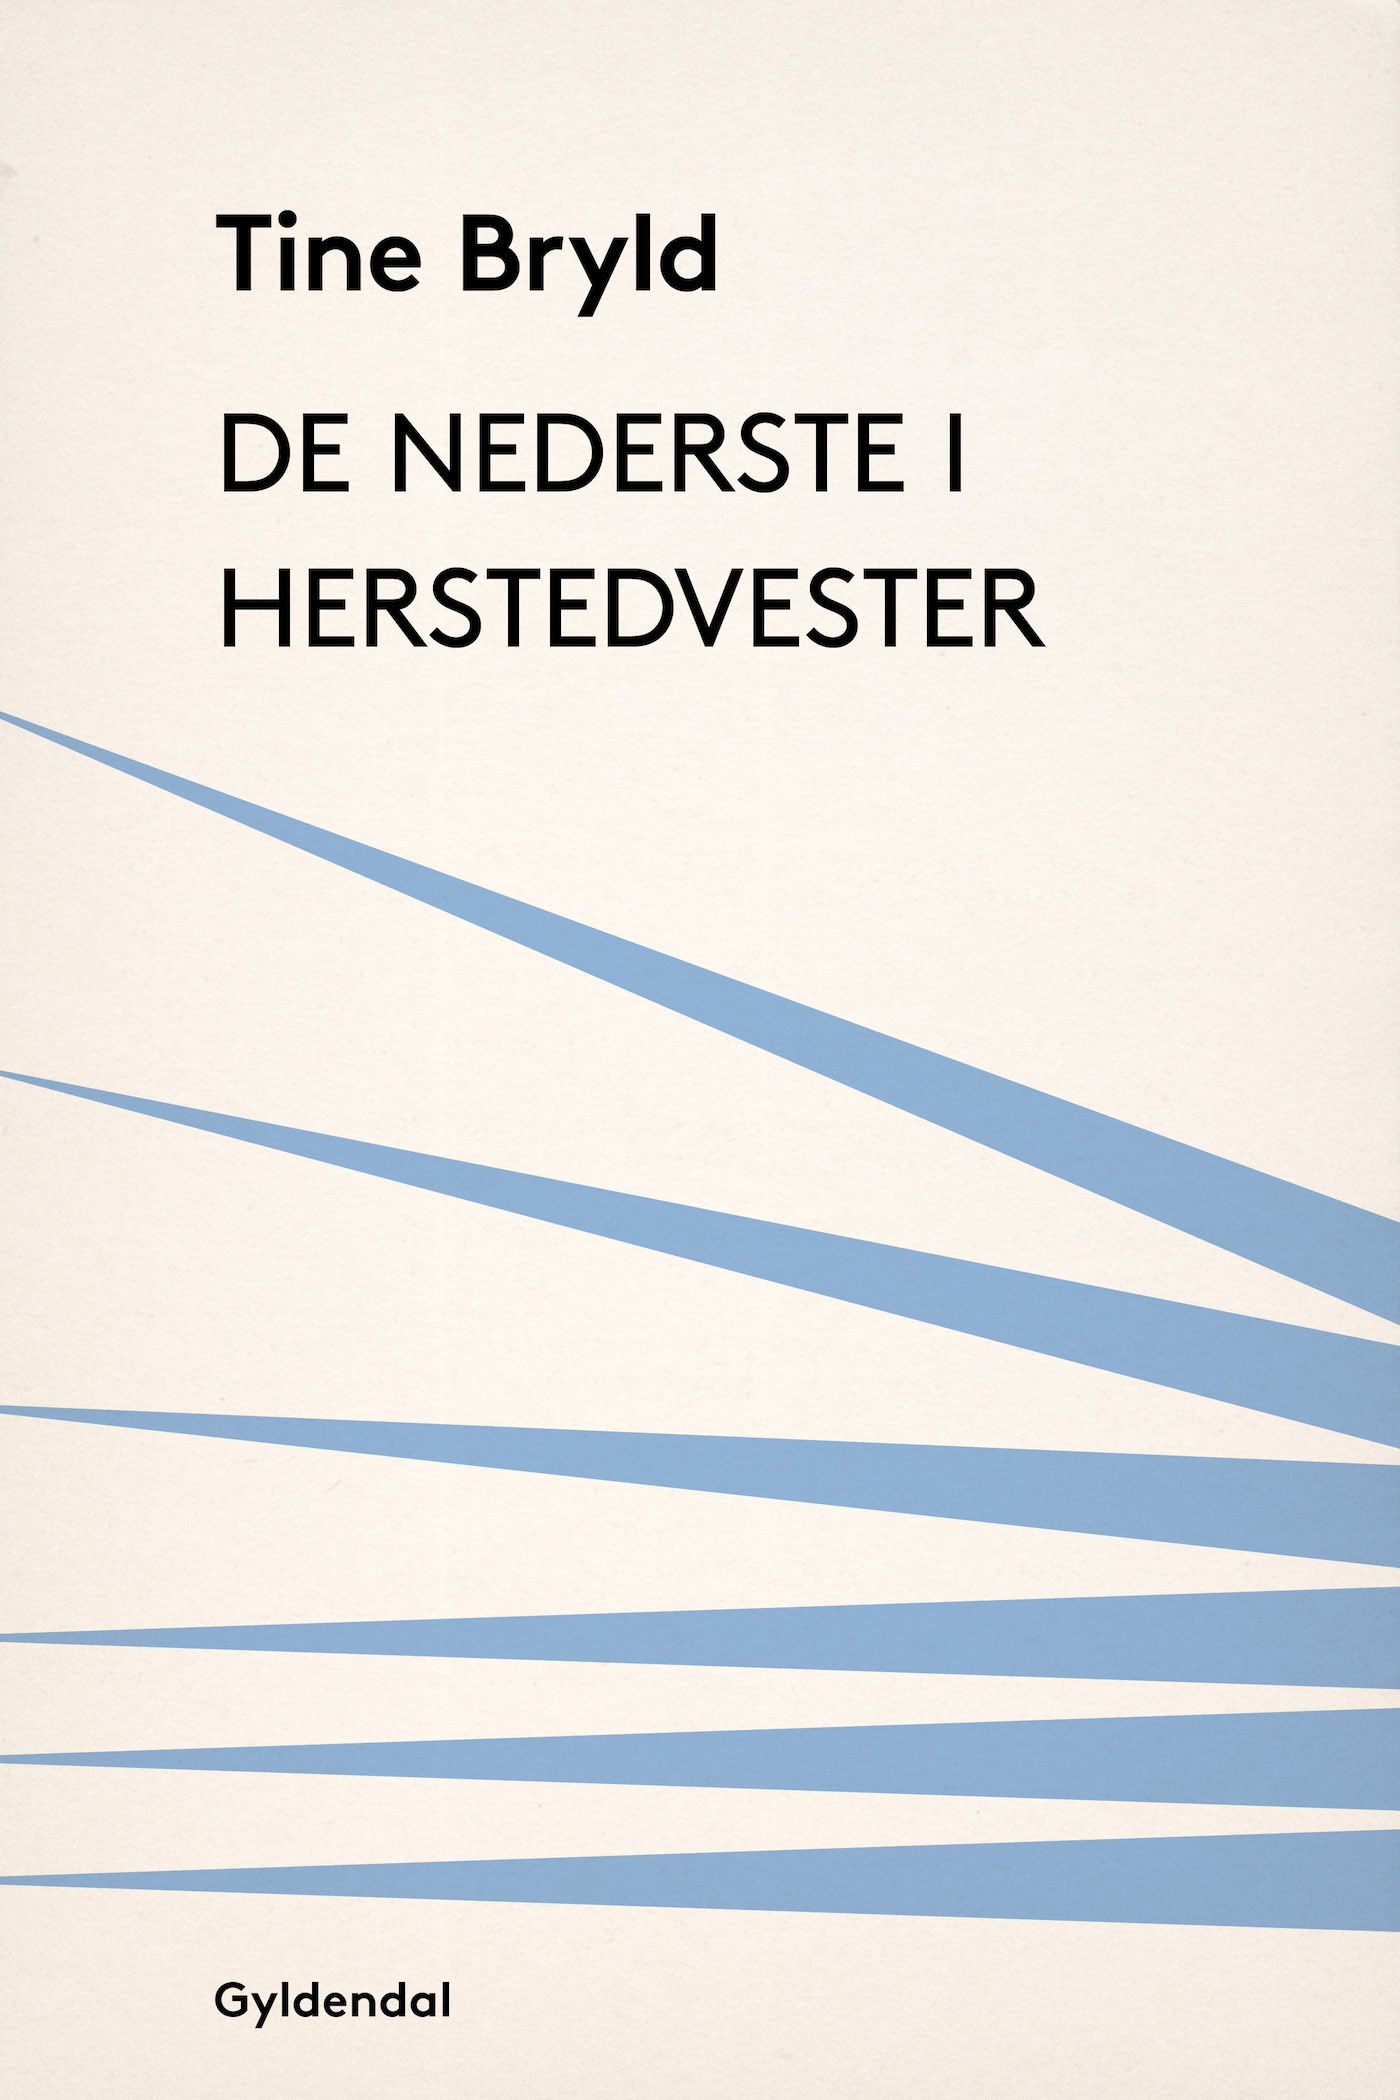 De nederste i Herstedvester, eBook by Tine Bryld